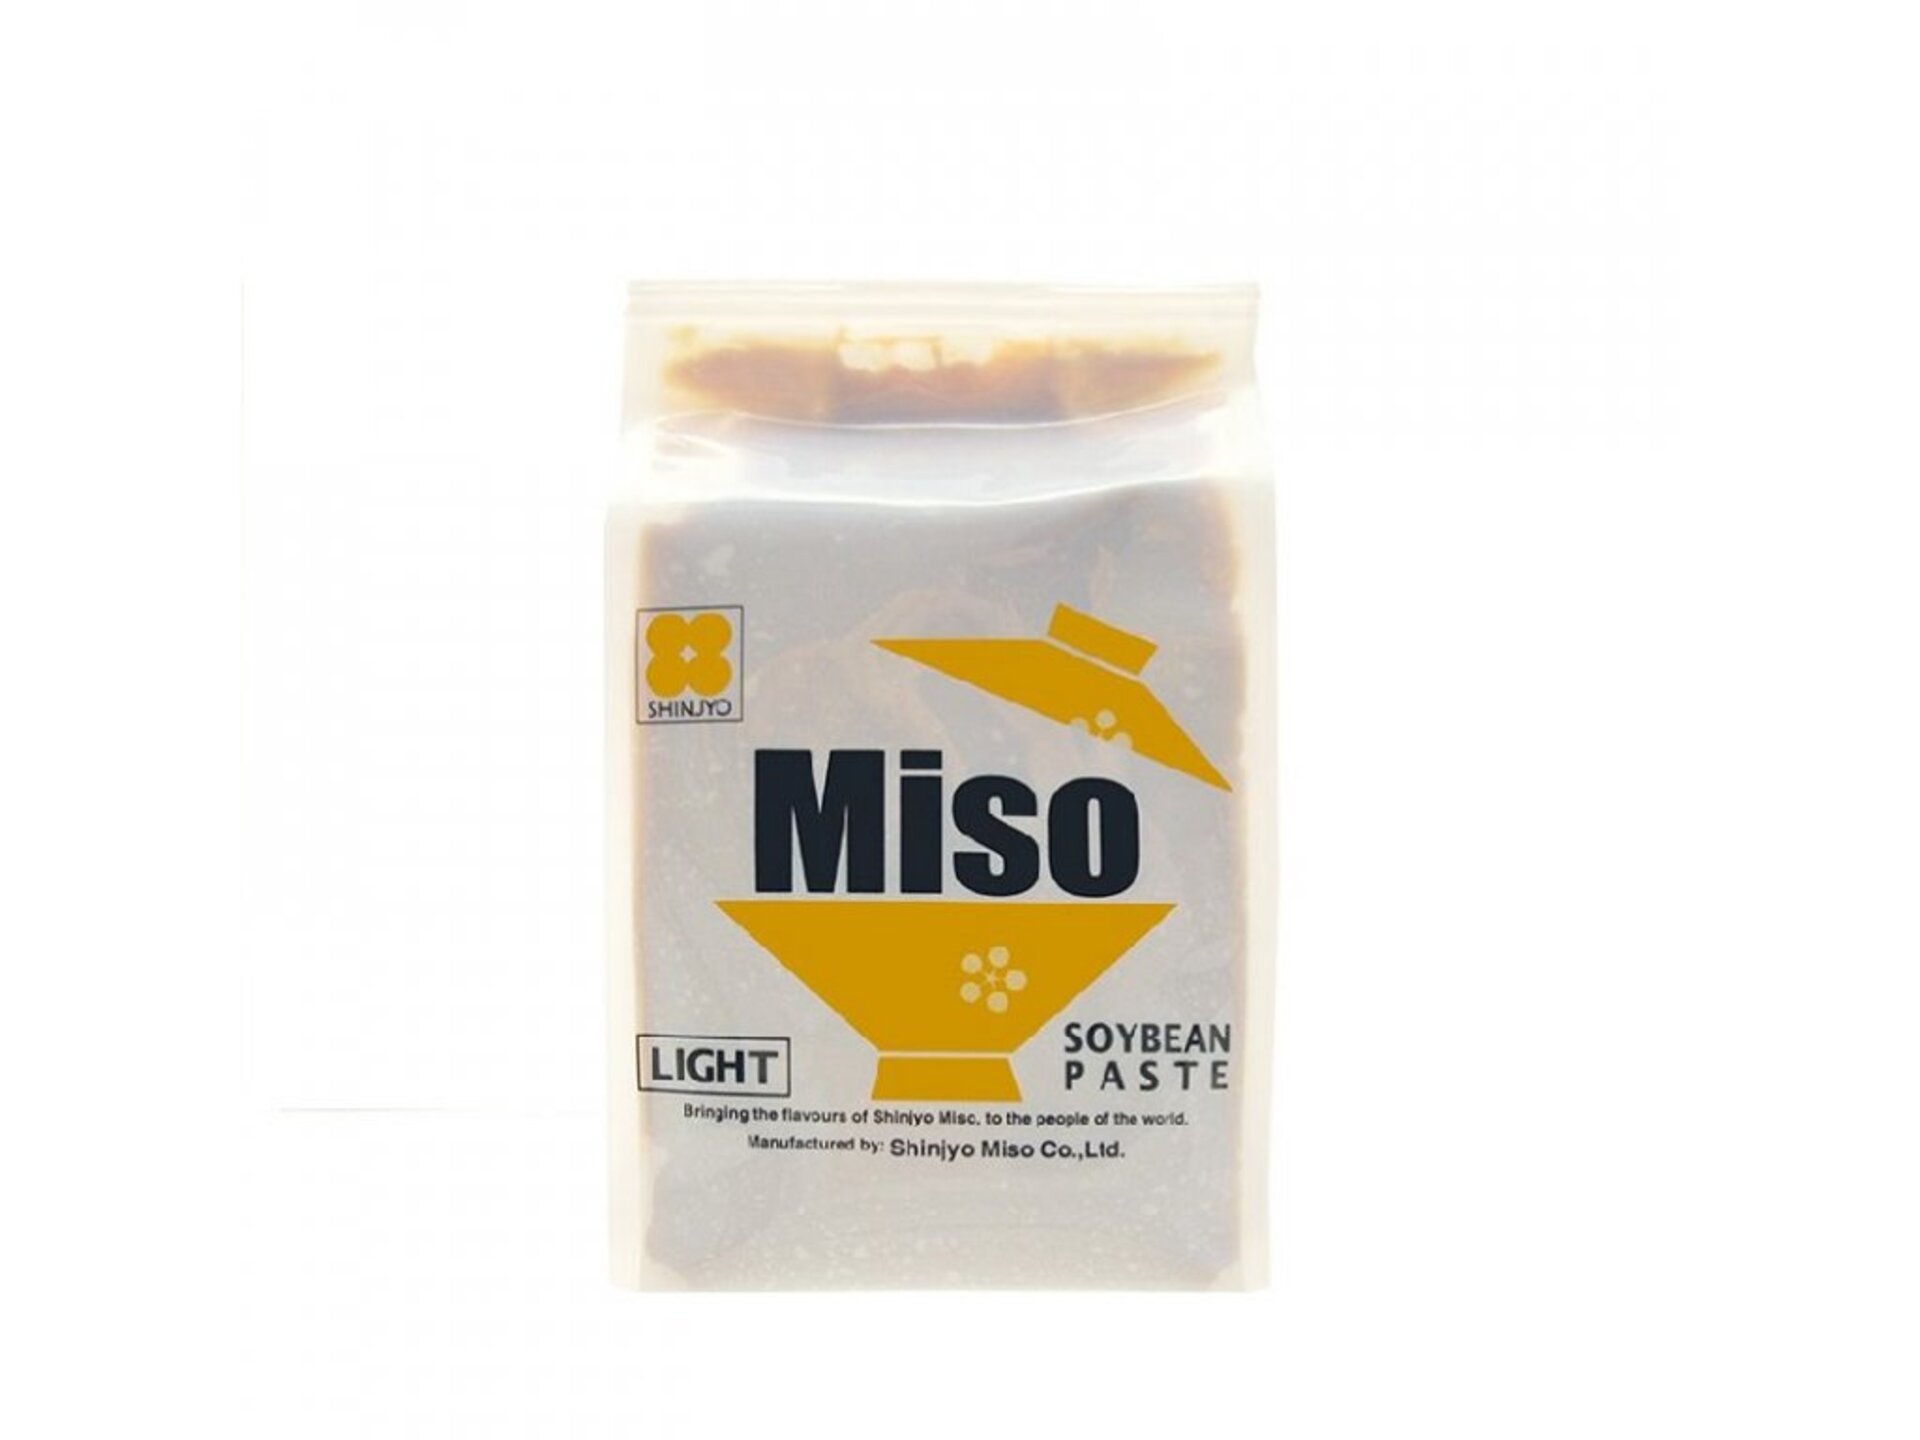 E-shop Shinjyo Shiro Miso pasta svetlá 500 g